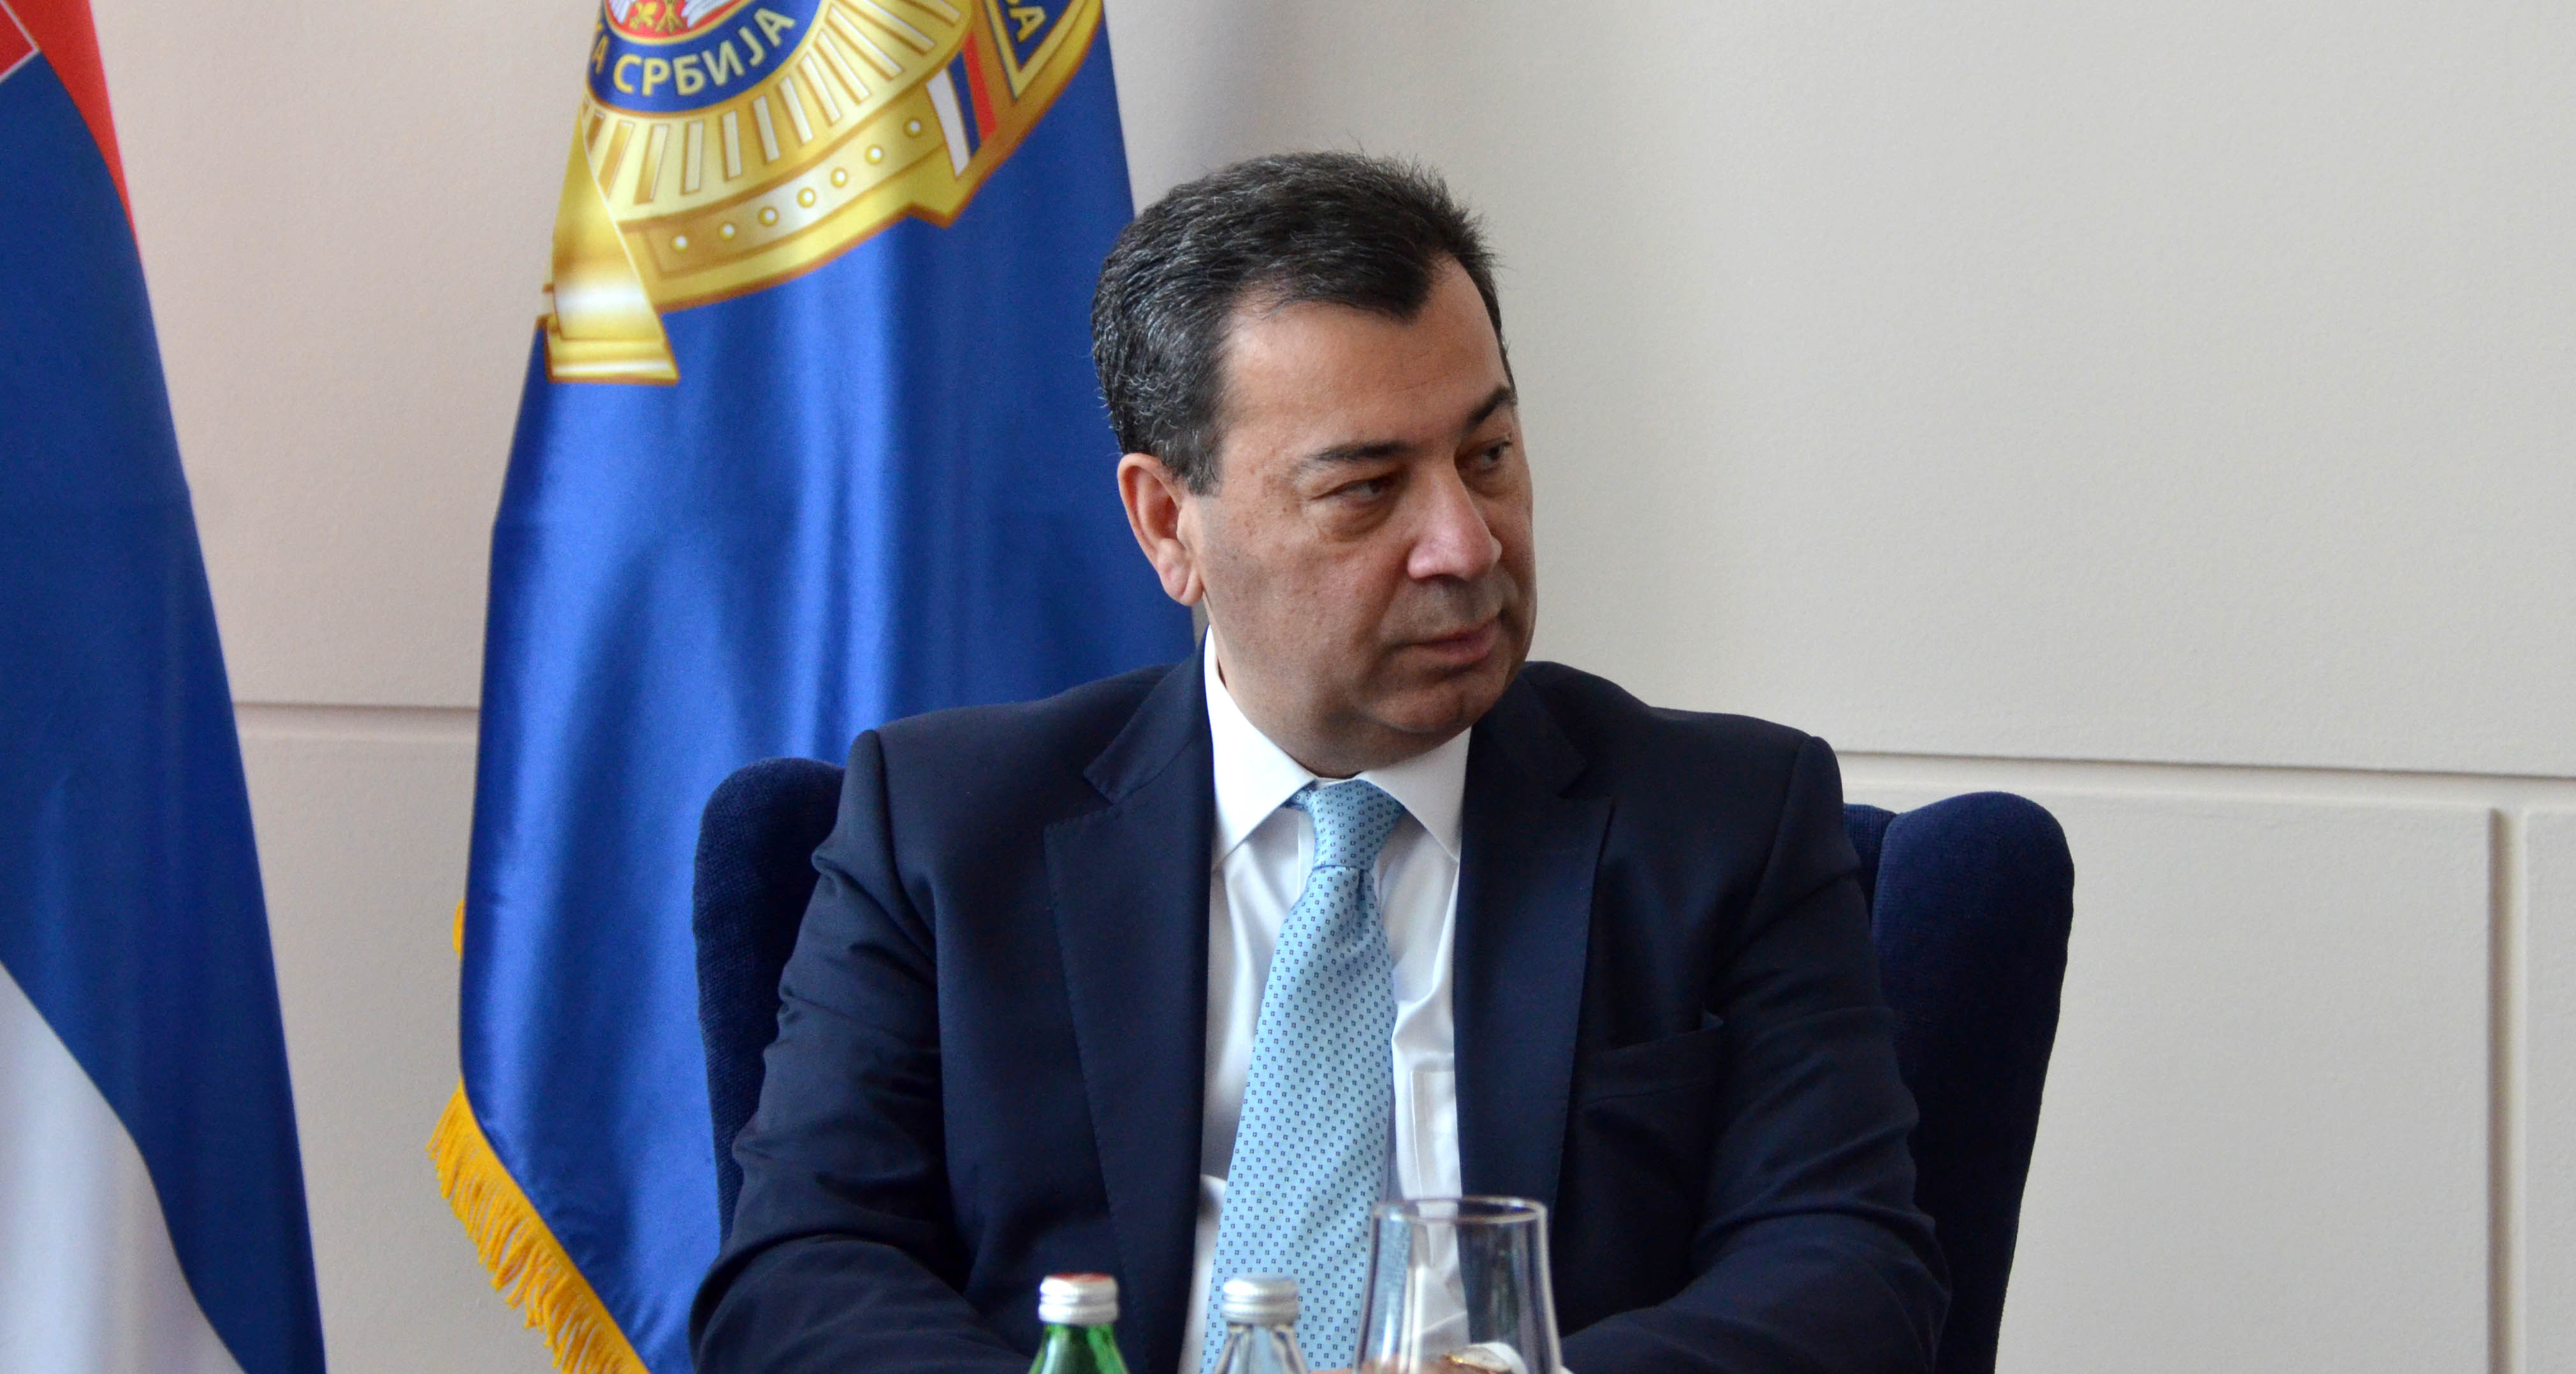 Μинистар Стефановић састао се са коизвестиоцима Комитета за мониторинг Парламентарне скупштине Савета Европе